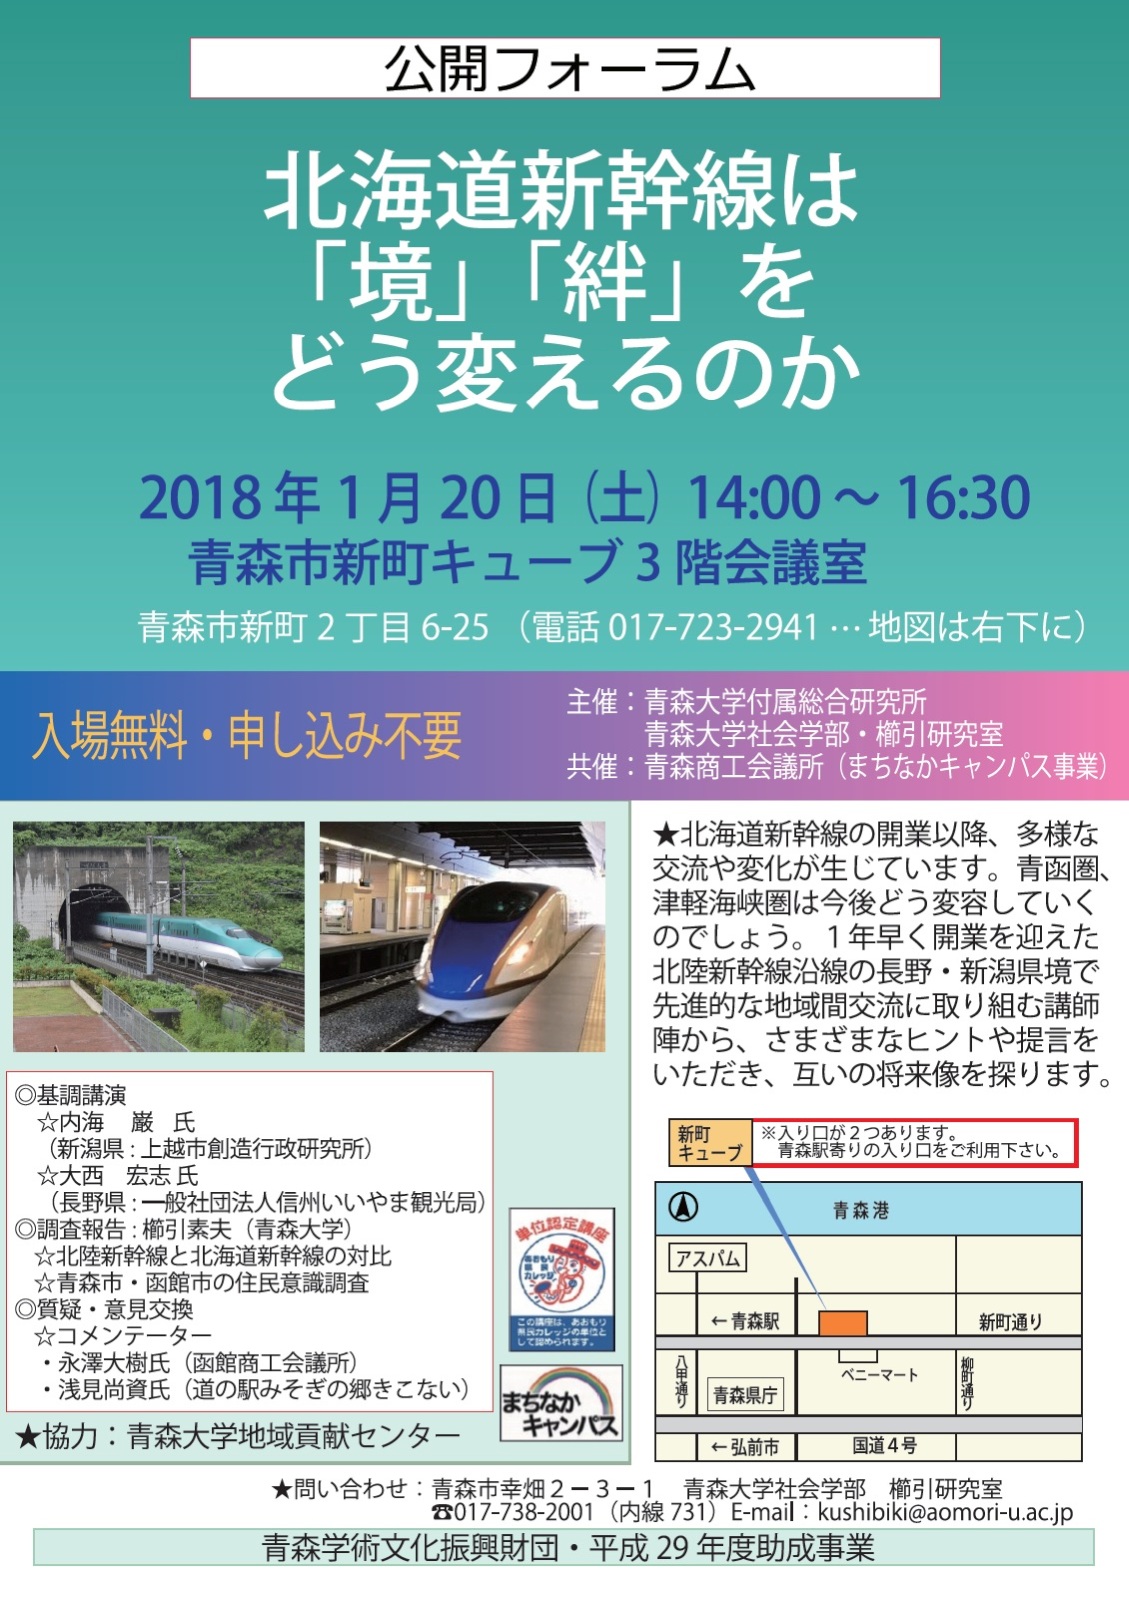 北海道新幹線で青函エリアがどう変わったか？ 青森大学の公開フォーラムに観光コンシェルジュが登壇！